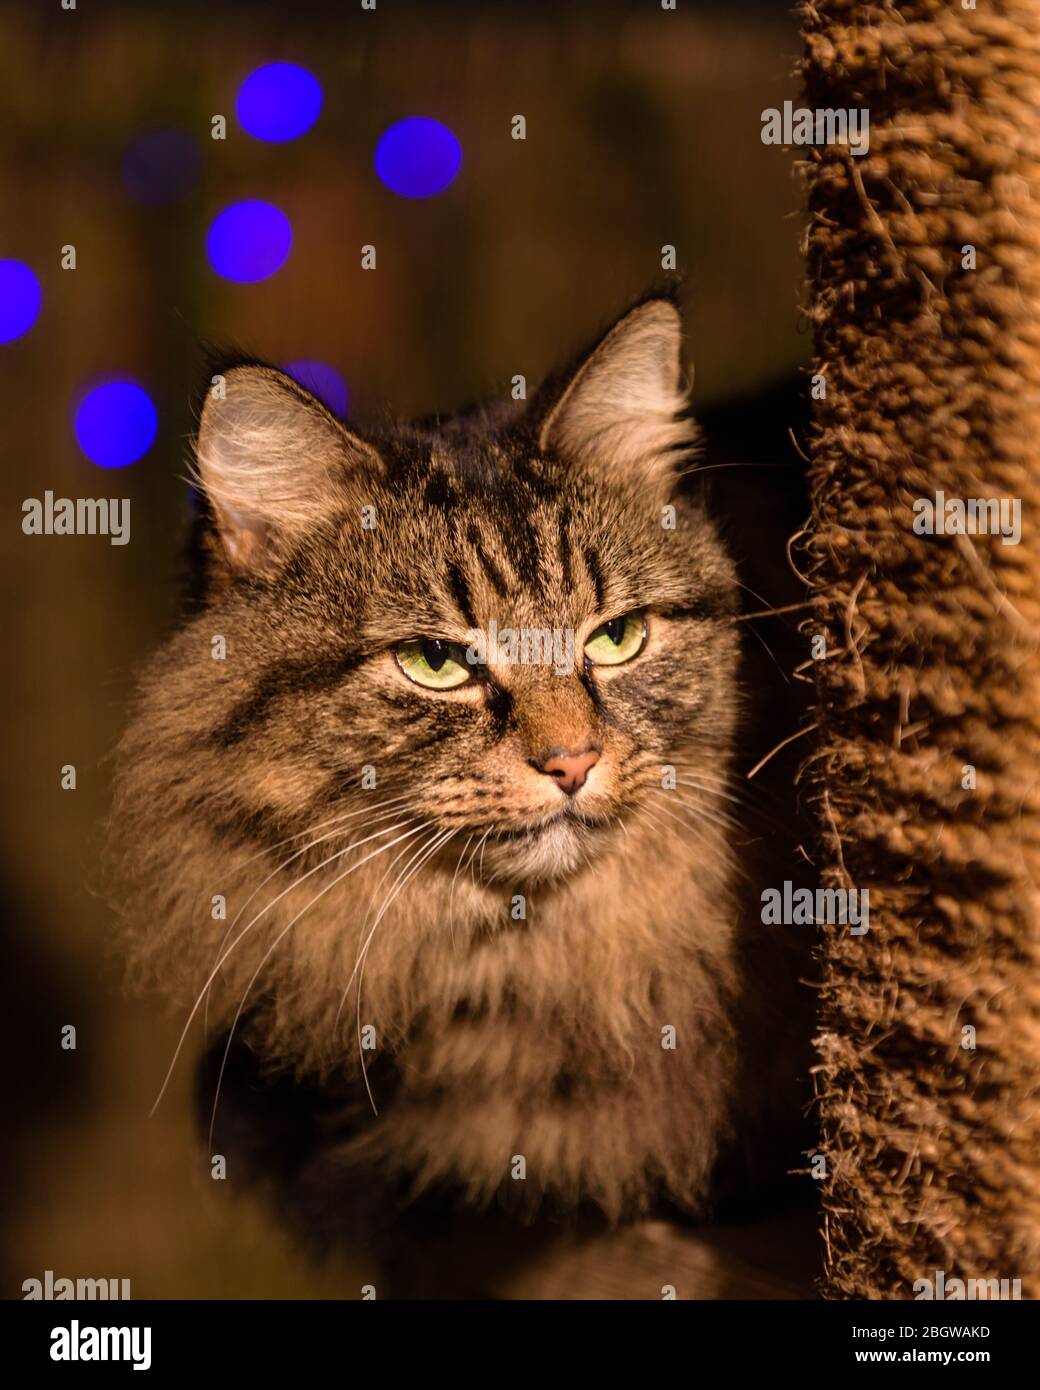 Tabby Katze Abend Porträt auf Garten Katze Turm. Mit Lichterkette  Hintergrund V- Oktober, 2017 Stockfotografie - Alamy